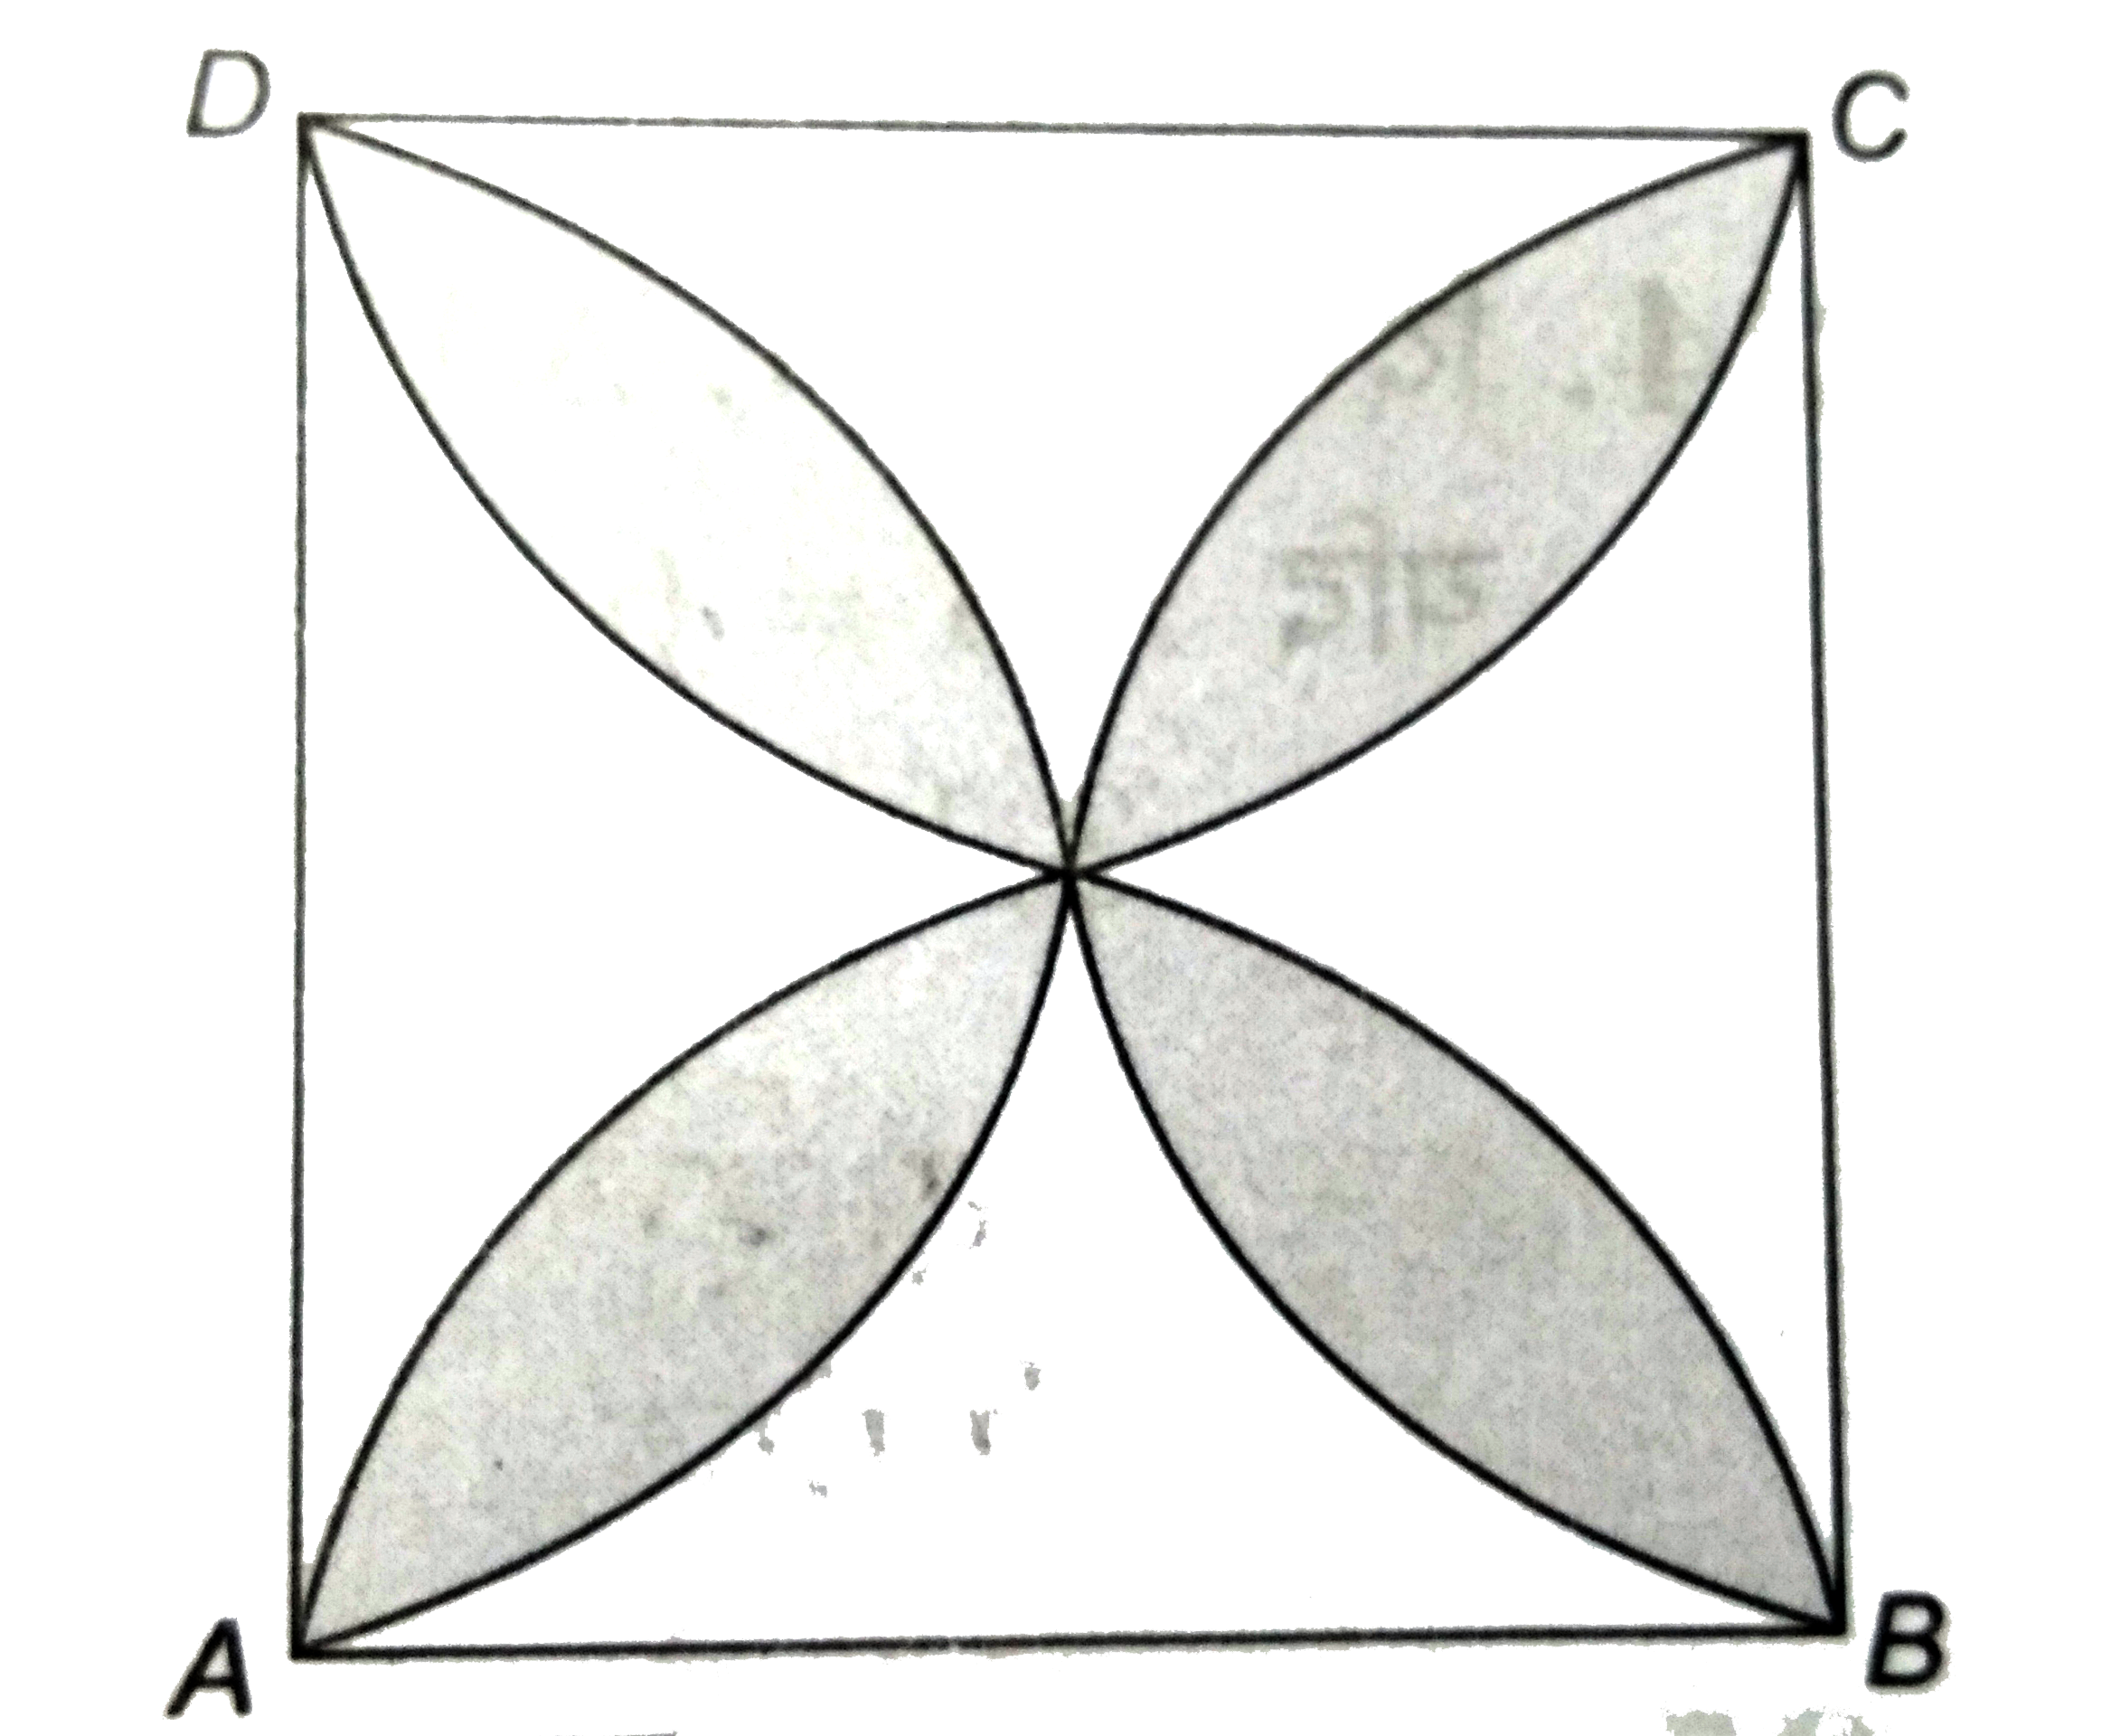 दी आकृति में 20 सेमी भुजा का एक वर्ग ABCD  दिखाया गया है । इसकी प्रत्येक  भुजा को व्यास लेकर अर्द्धवृत्त  बनाये गये है । छायांकित  भाग का क्षेत्रफल  ज्ञात कीजिए । ( pi = 3.14 का प्रयोग  करे )